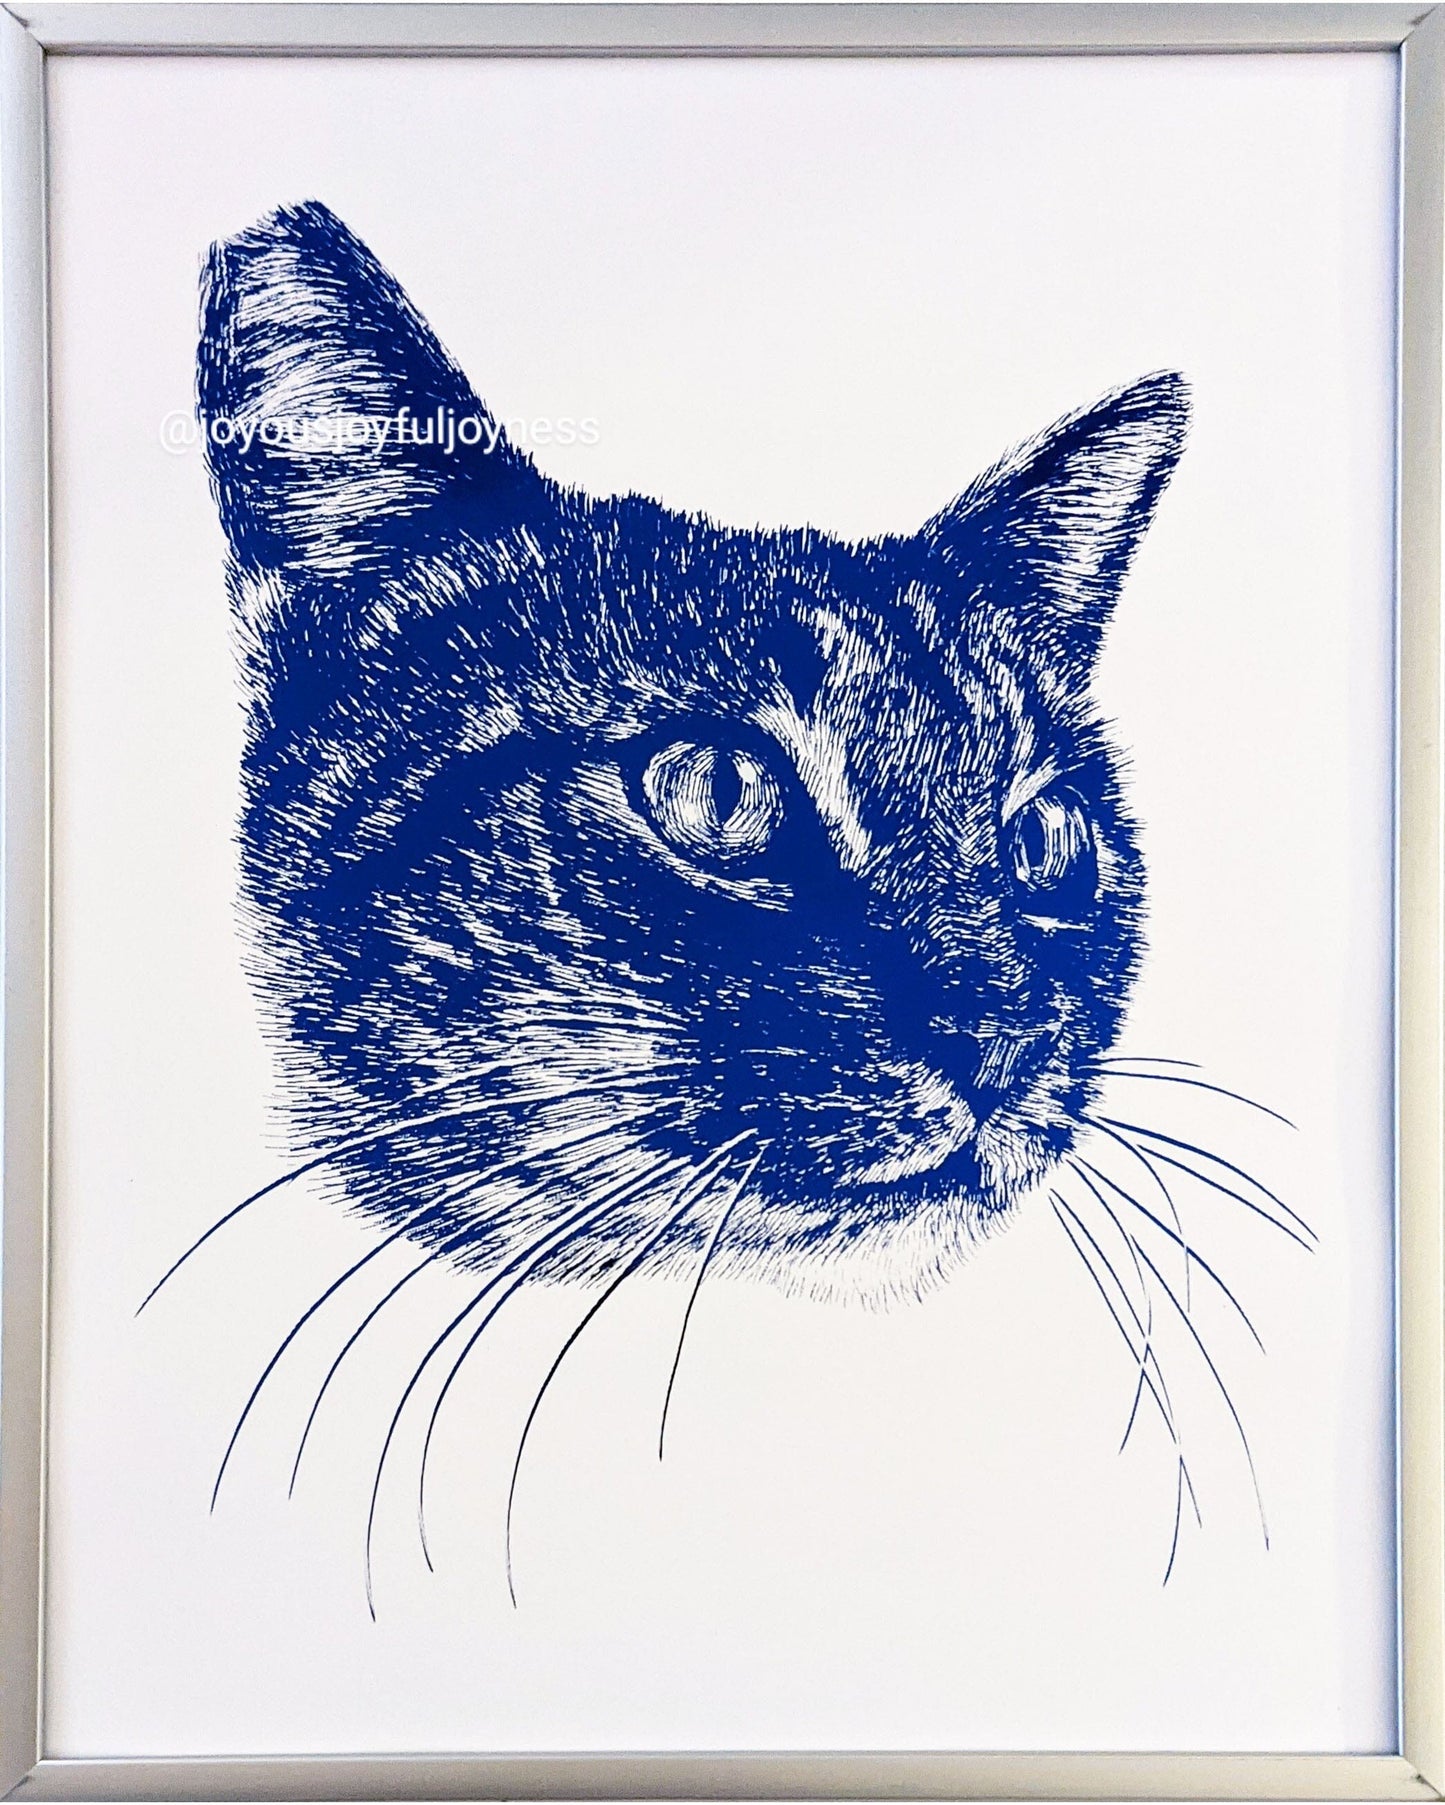 Custom Cat Drawings Posters, Prints, & Visual Artwork JoyousJoyfulJoyness 